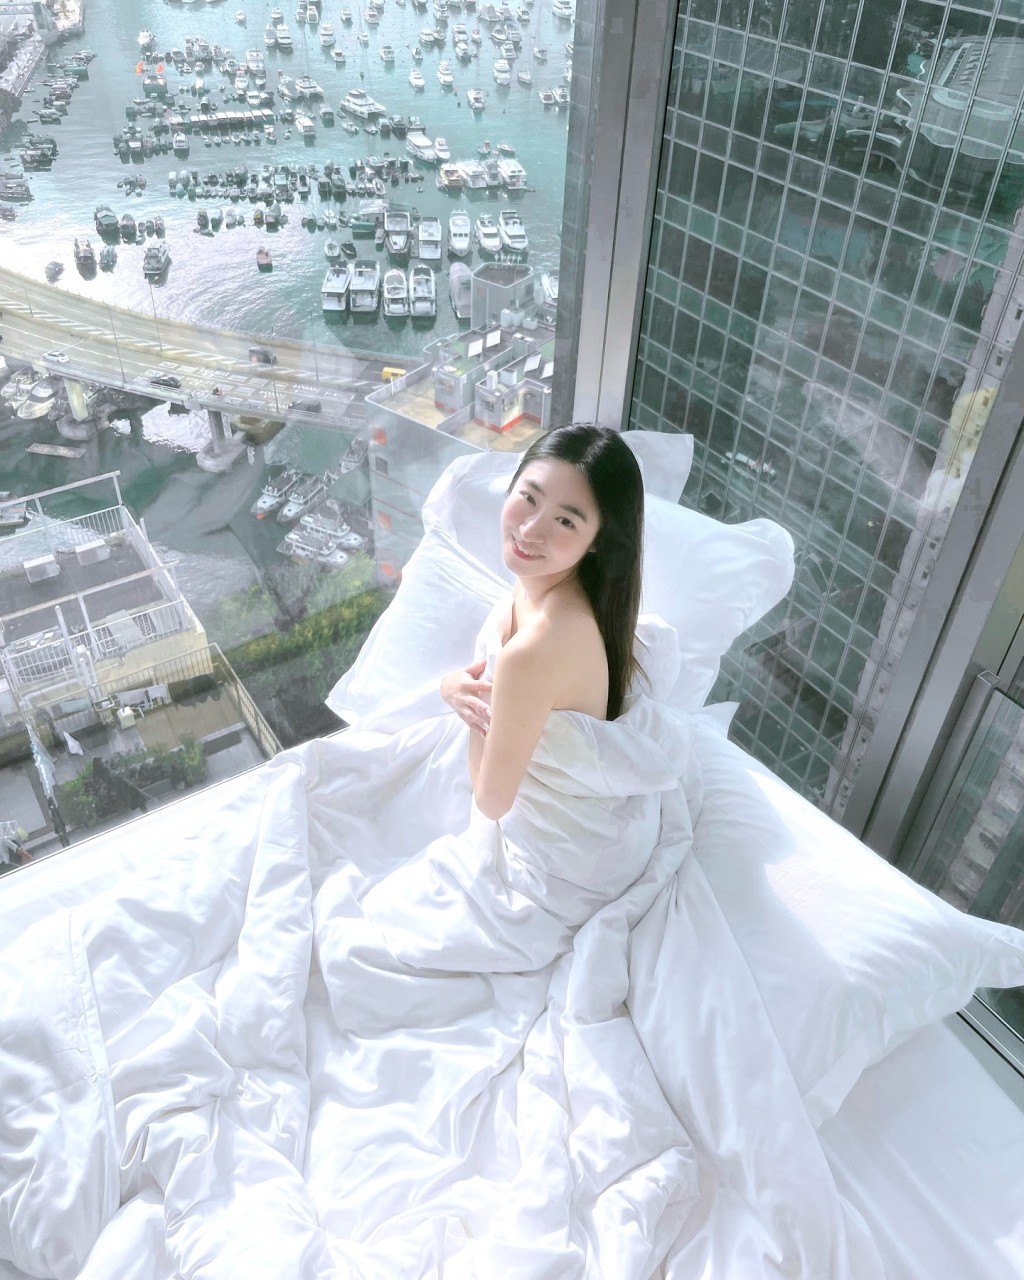 黄紫恩今日（11日）分享一张疑似在天后一间酒店打卡的床照。